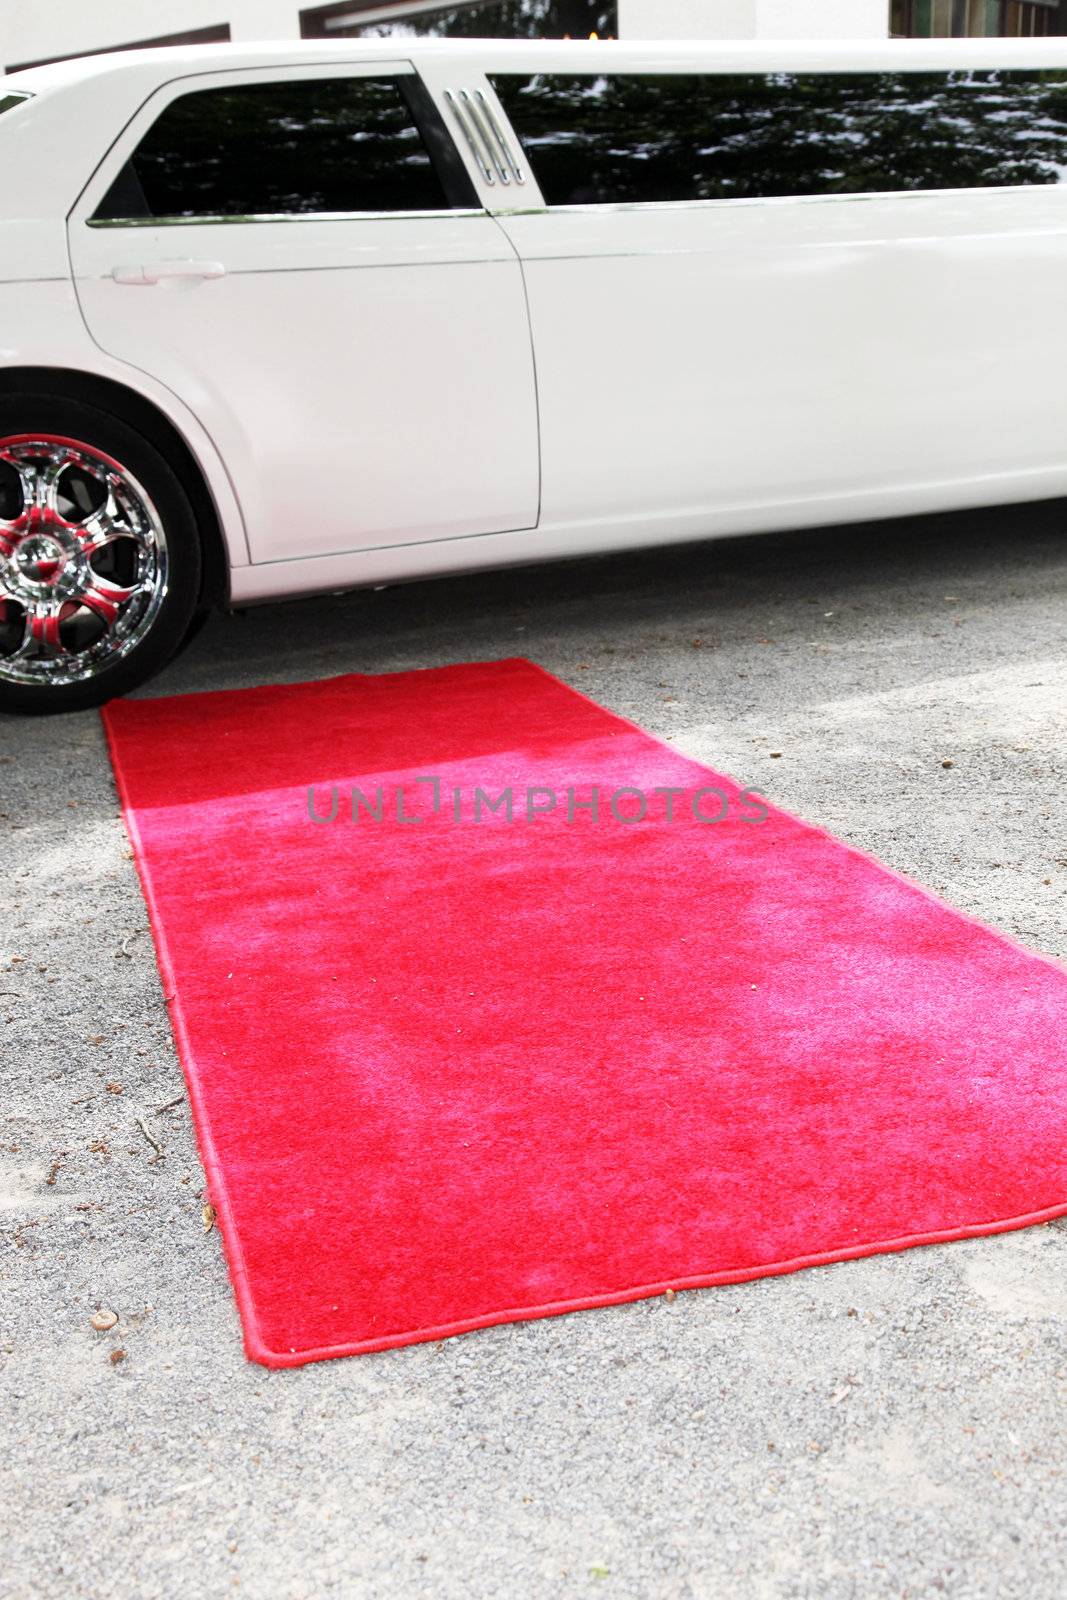 Limousine and red carpet Limousine and red carpet  by Farina6000